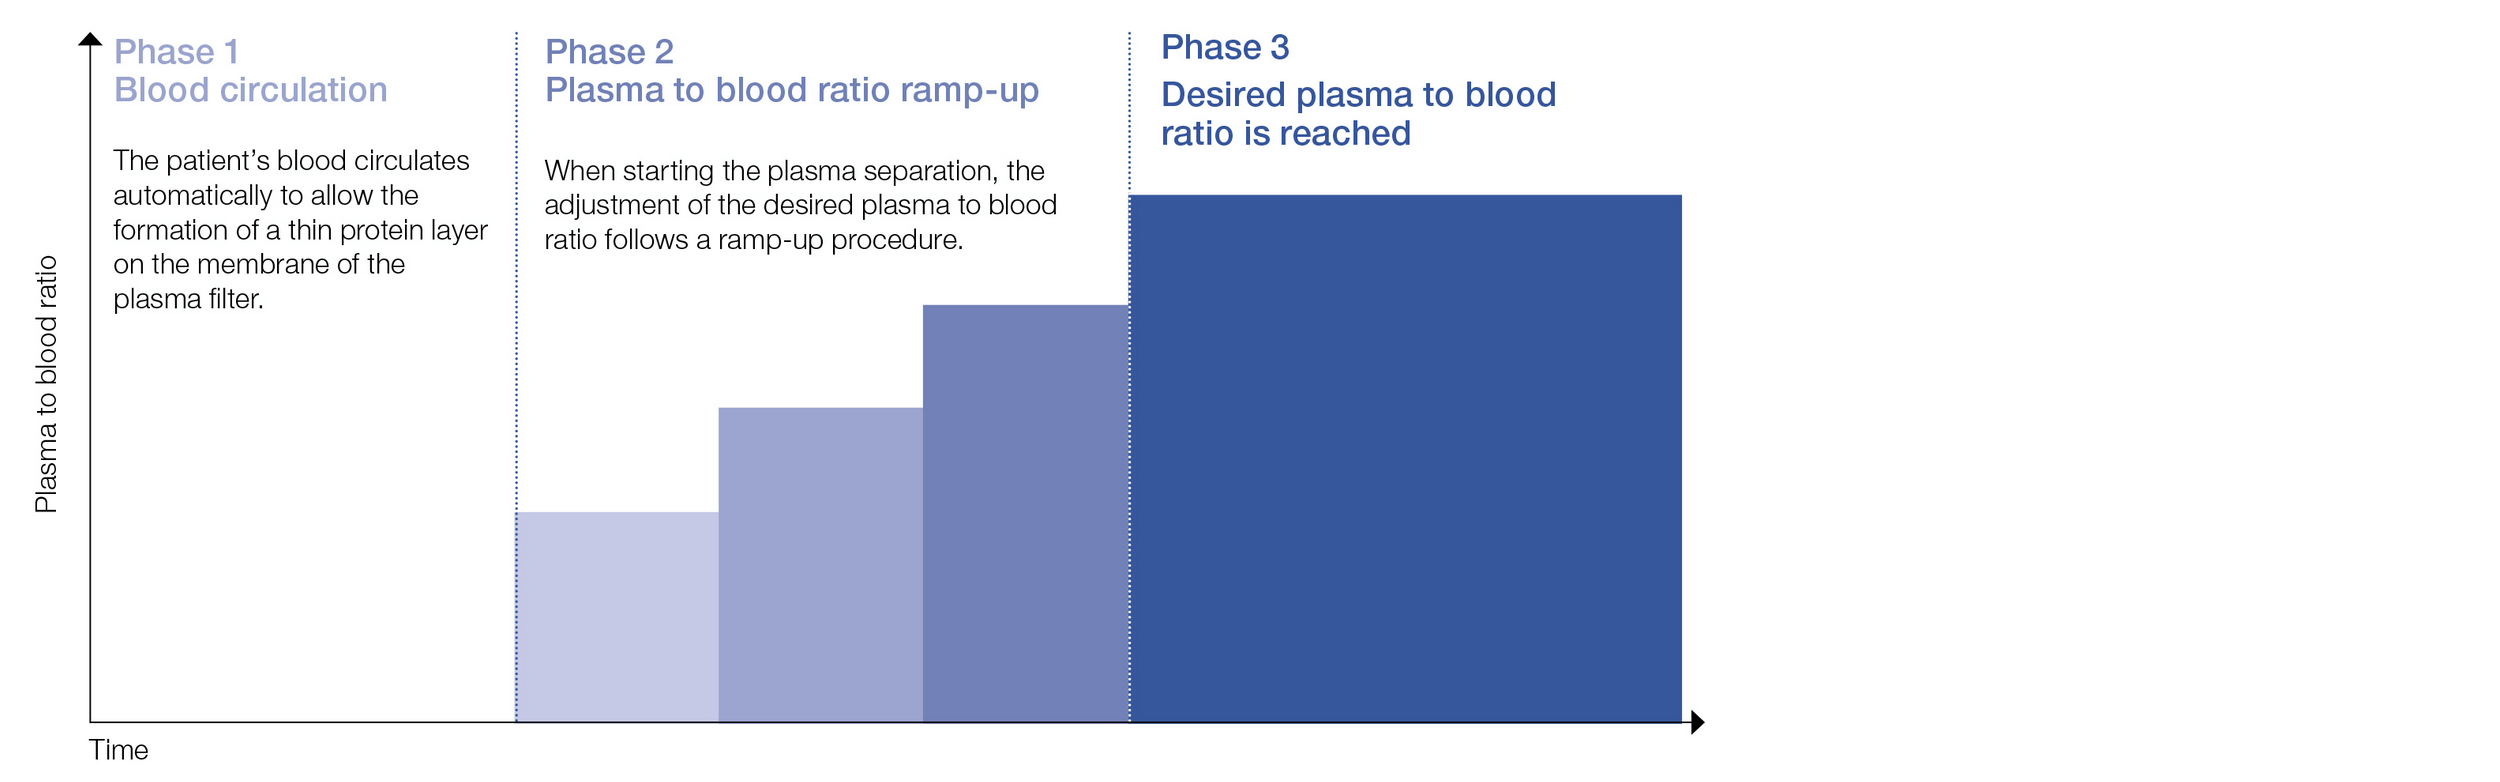 Zvyšování poměru plazma-krev